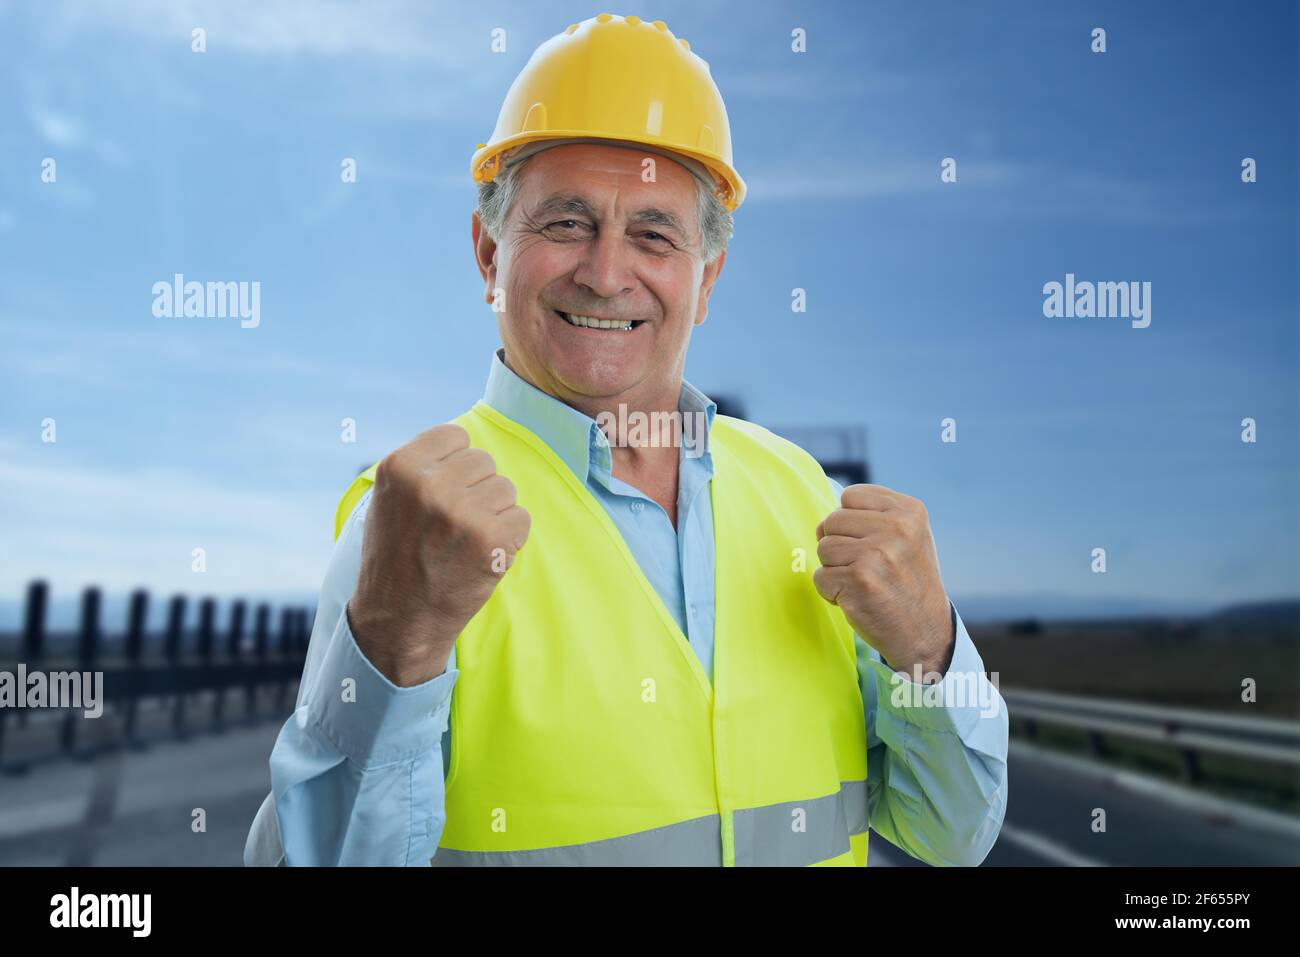 Happy adult männlich alten Konstruktor trägt gelben Hardhat und fluoreszierend Weste machen feiert Erfolg Geste mit Fäusten fröhlichen Ausdruck Stockfoto